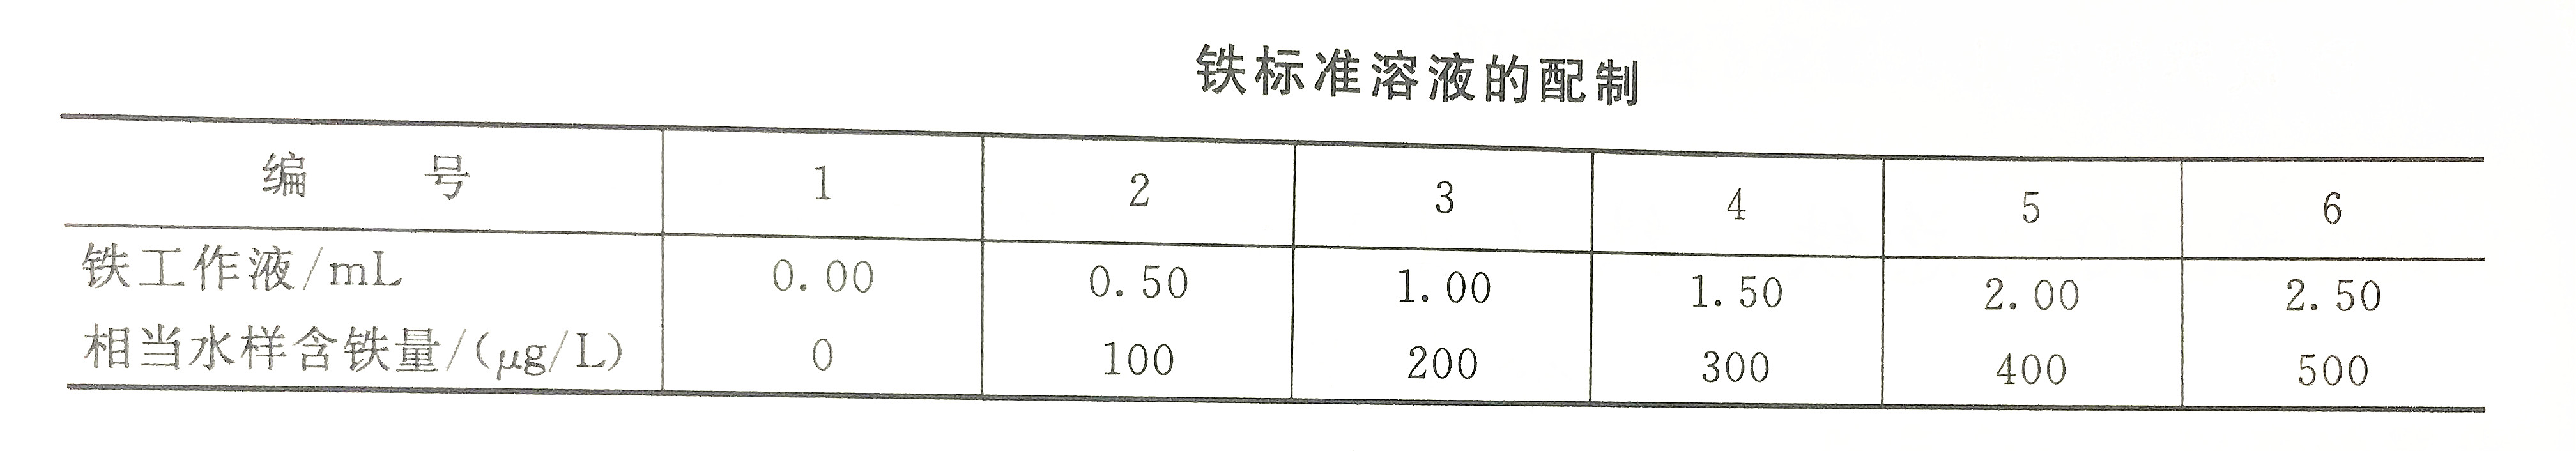 铁标准溶液配制表